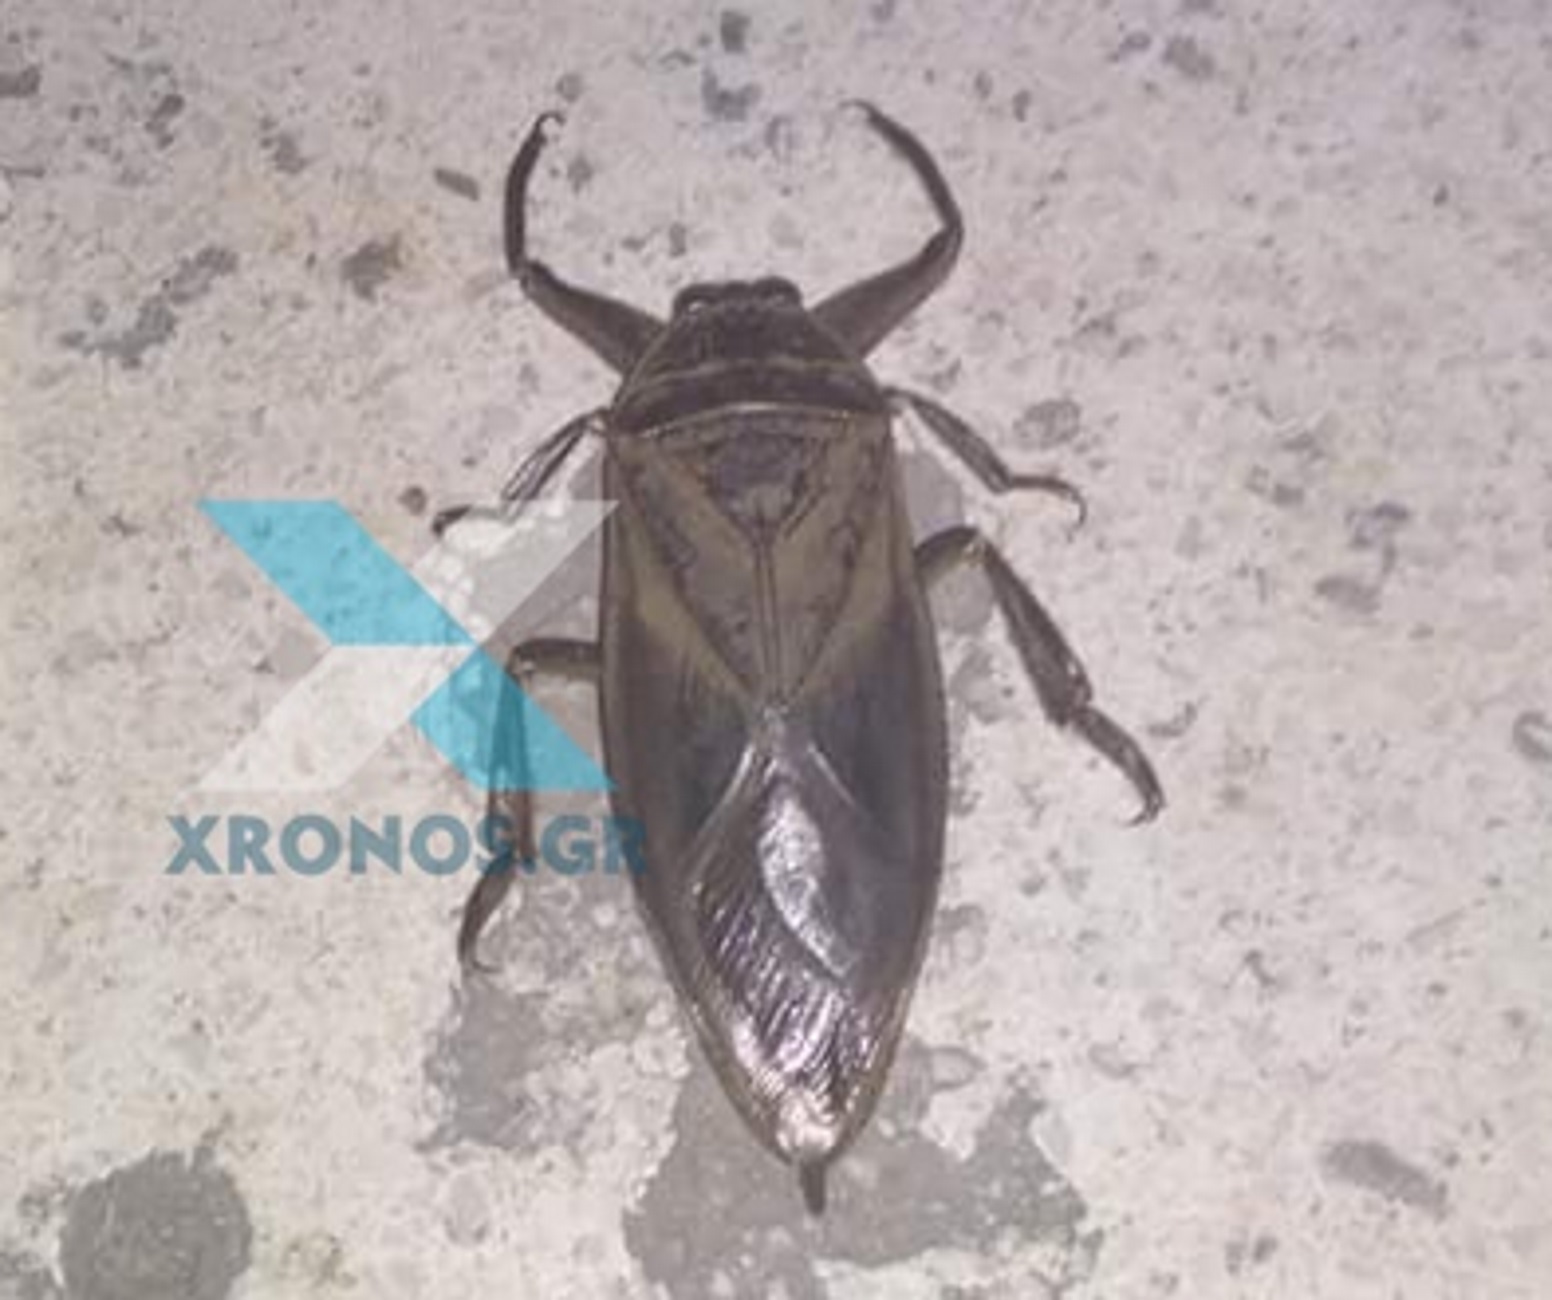 Πάργα: Μοιάζει με κατσαρίδα αλλά είναι δηλητηριώδες έντομο – Βγαλμένες από θρίλερ οι αντιδράσεις